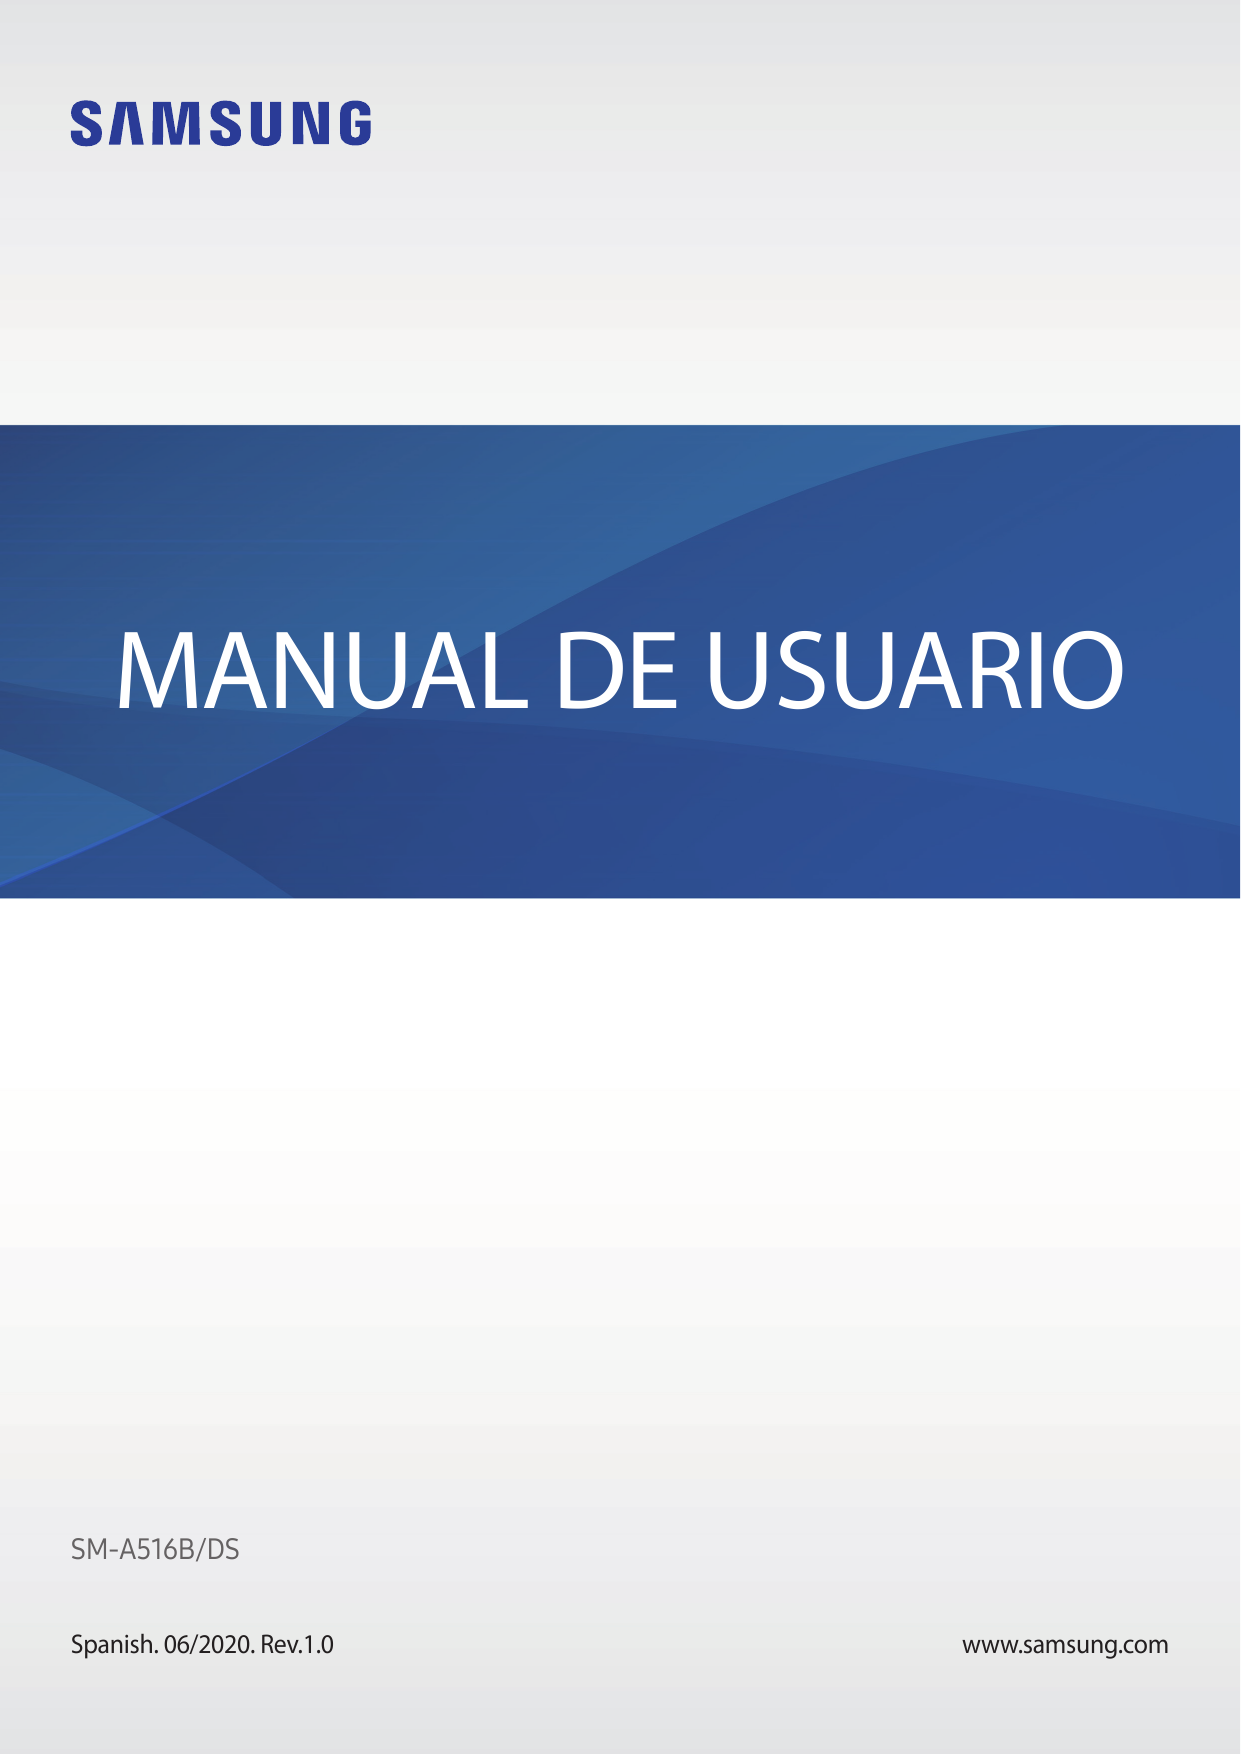 MANUAL DE USUARIOSM-A516B/DSSpanish. 06/2020. Rev.1.0www.samsung.com